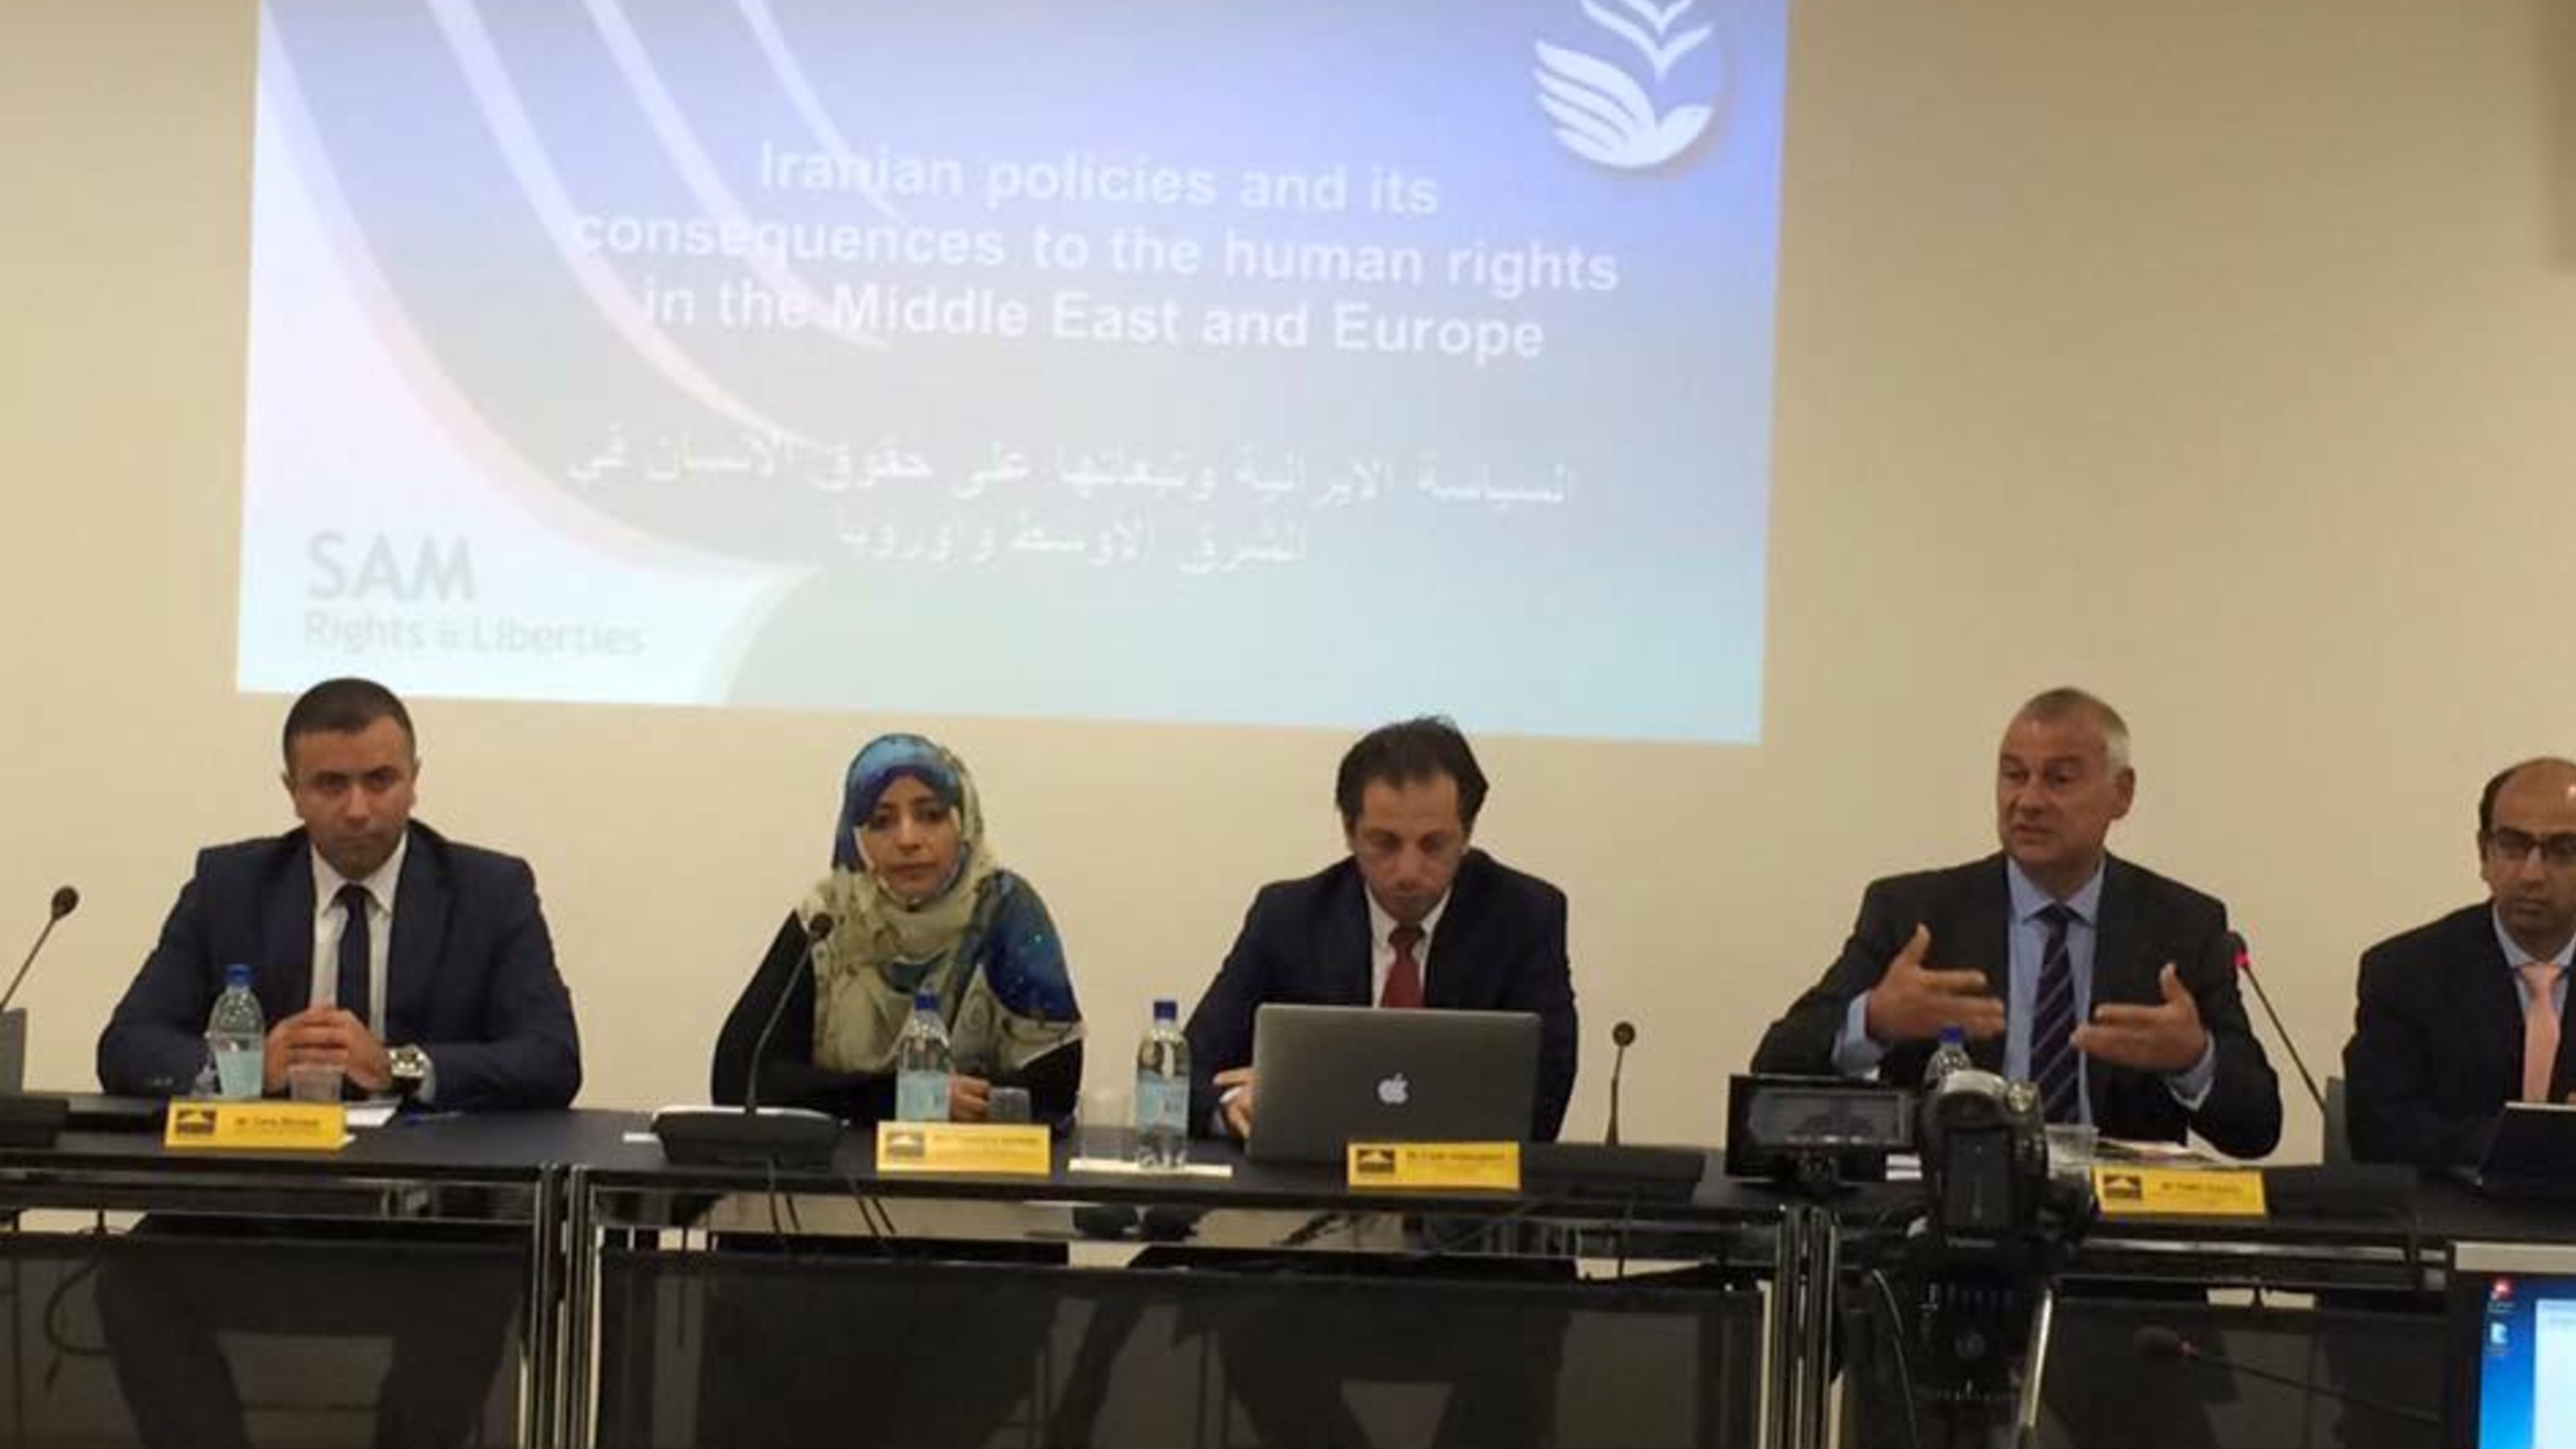 كلمة الناشطة الحائزة على جائزة نوبل للسلام توكل كرمان في ندوة السياسة الايرانية وتبعاتها على حقوق الانسان في الشرق الأوسط وأوربا - جنيف